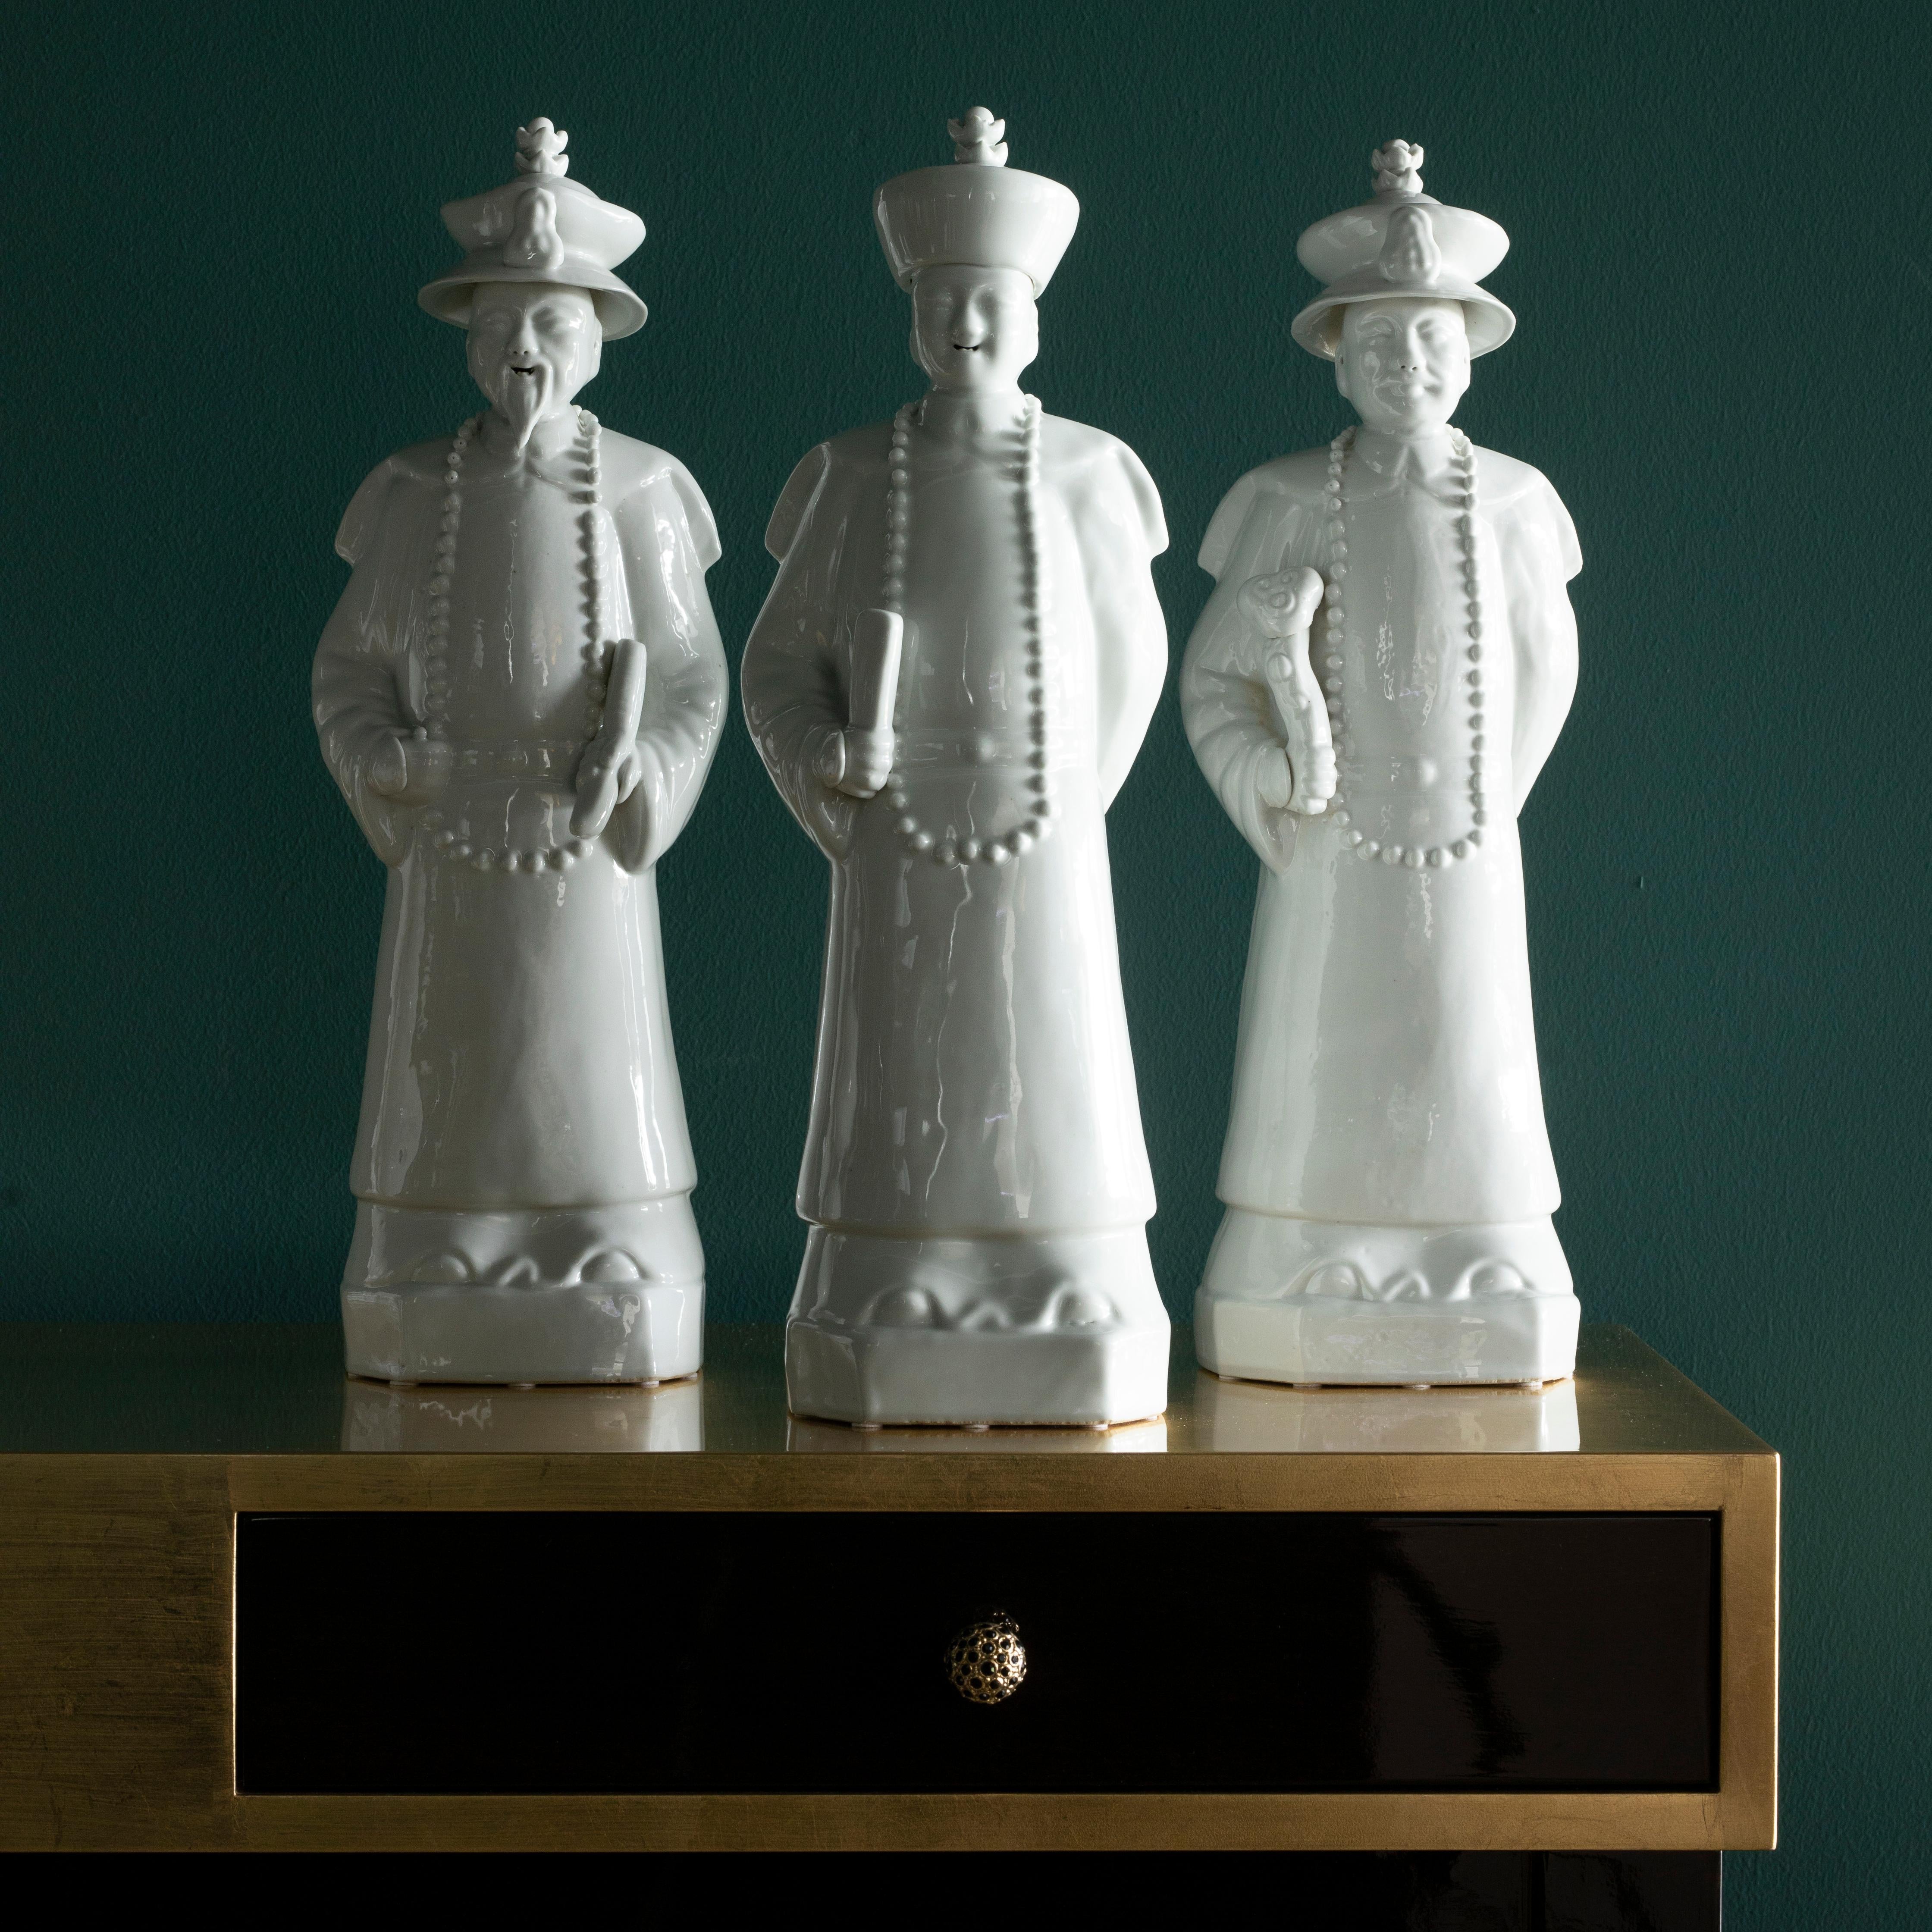 Set/3 Qing-Kaiser Porzellan-Statuen, Lusitanus Home Collection'S von Legend of Asia.

Echte chinesische Porzellanfiguren in Weiß, von Hand nach traditionellen Methoden hergestellt. Die langjährige Beziehung zwischen Portugal und Macau wird mit